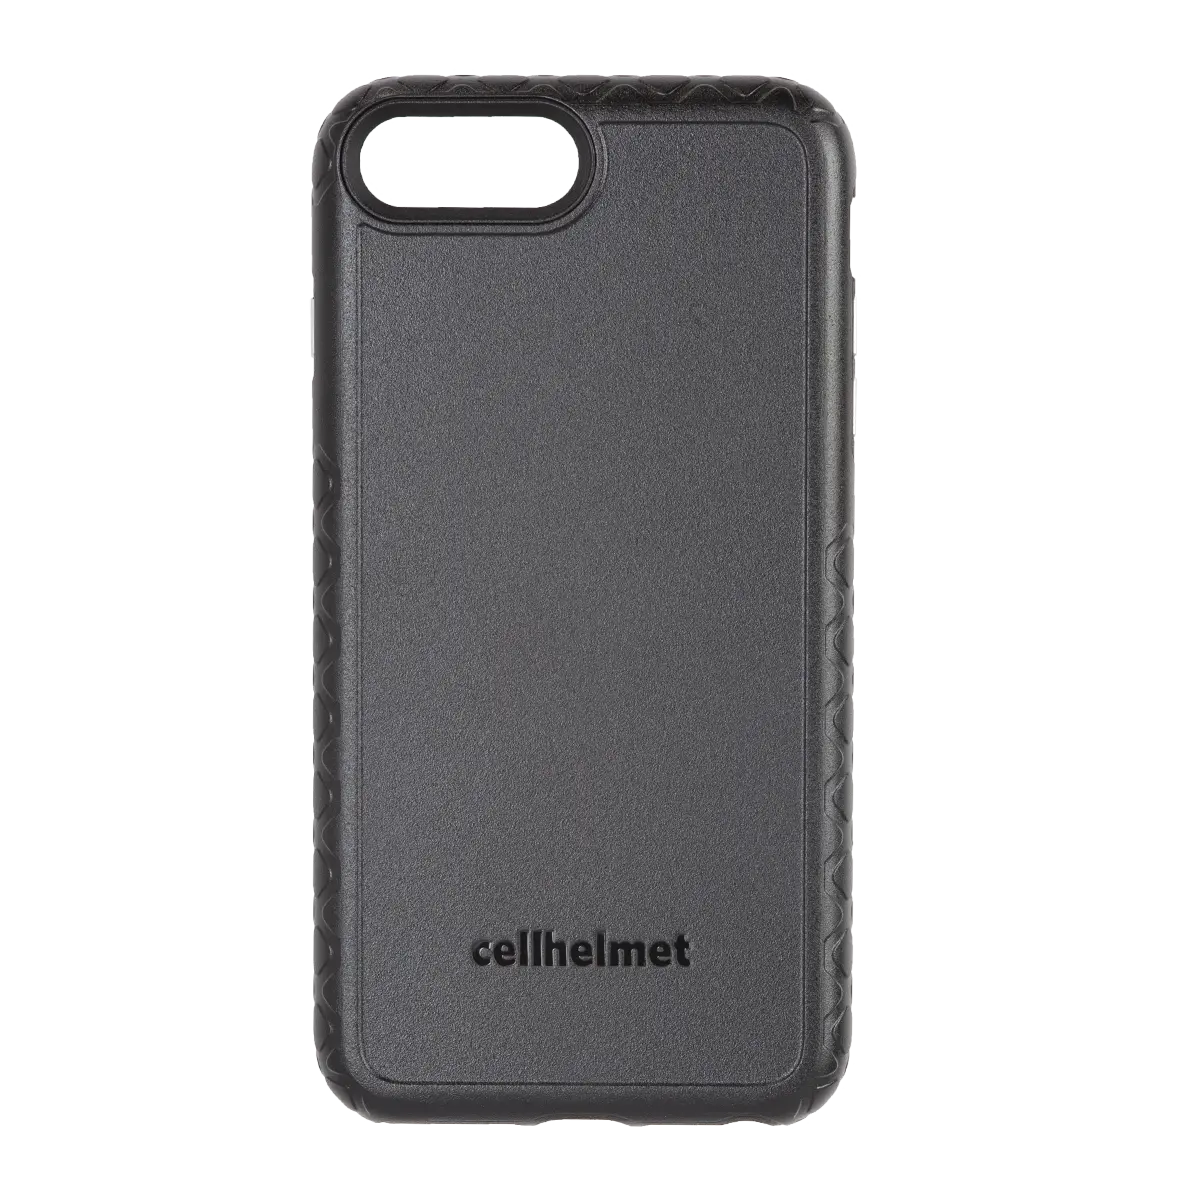 Black cellhelmet Customizable Case for iPhone 8 Plus